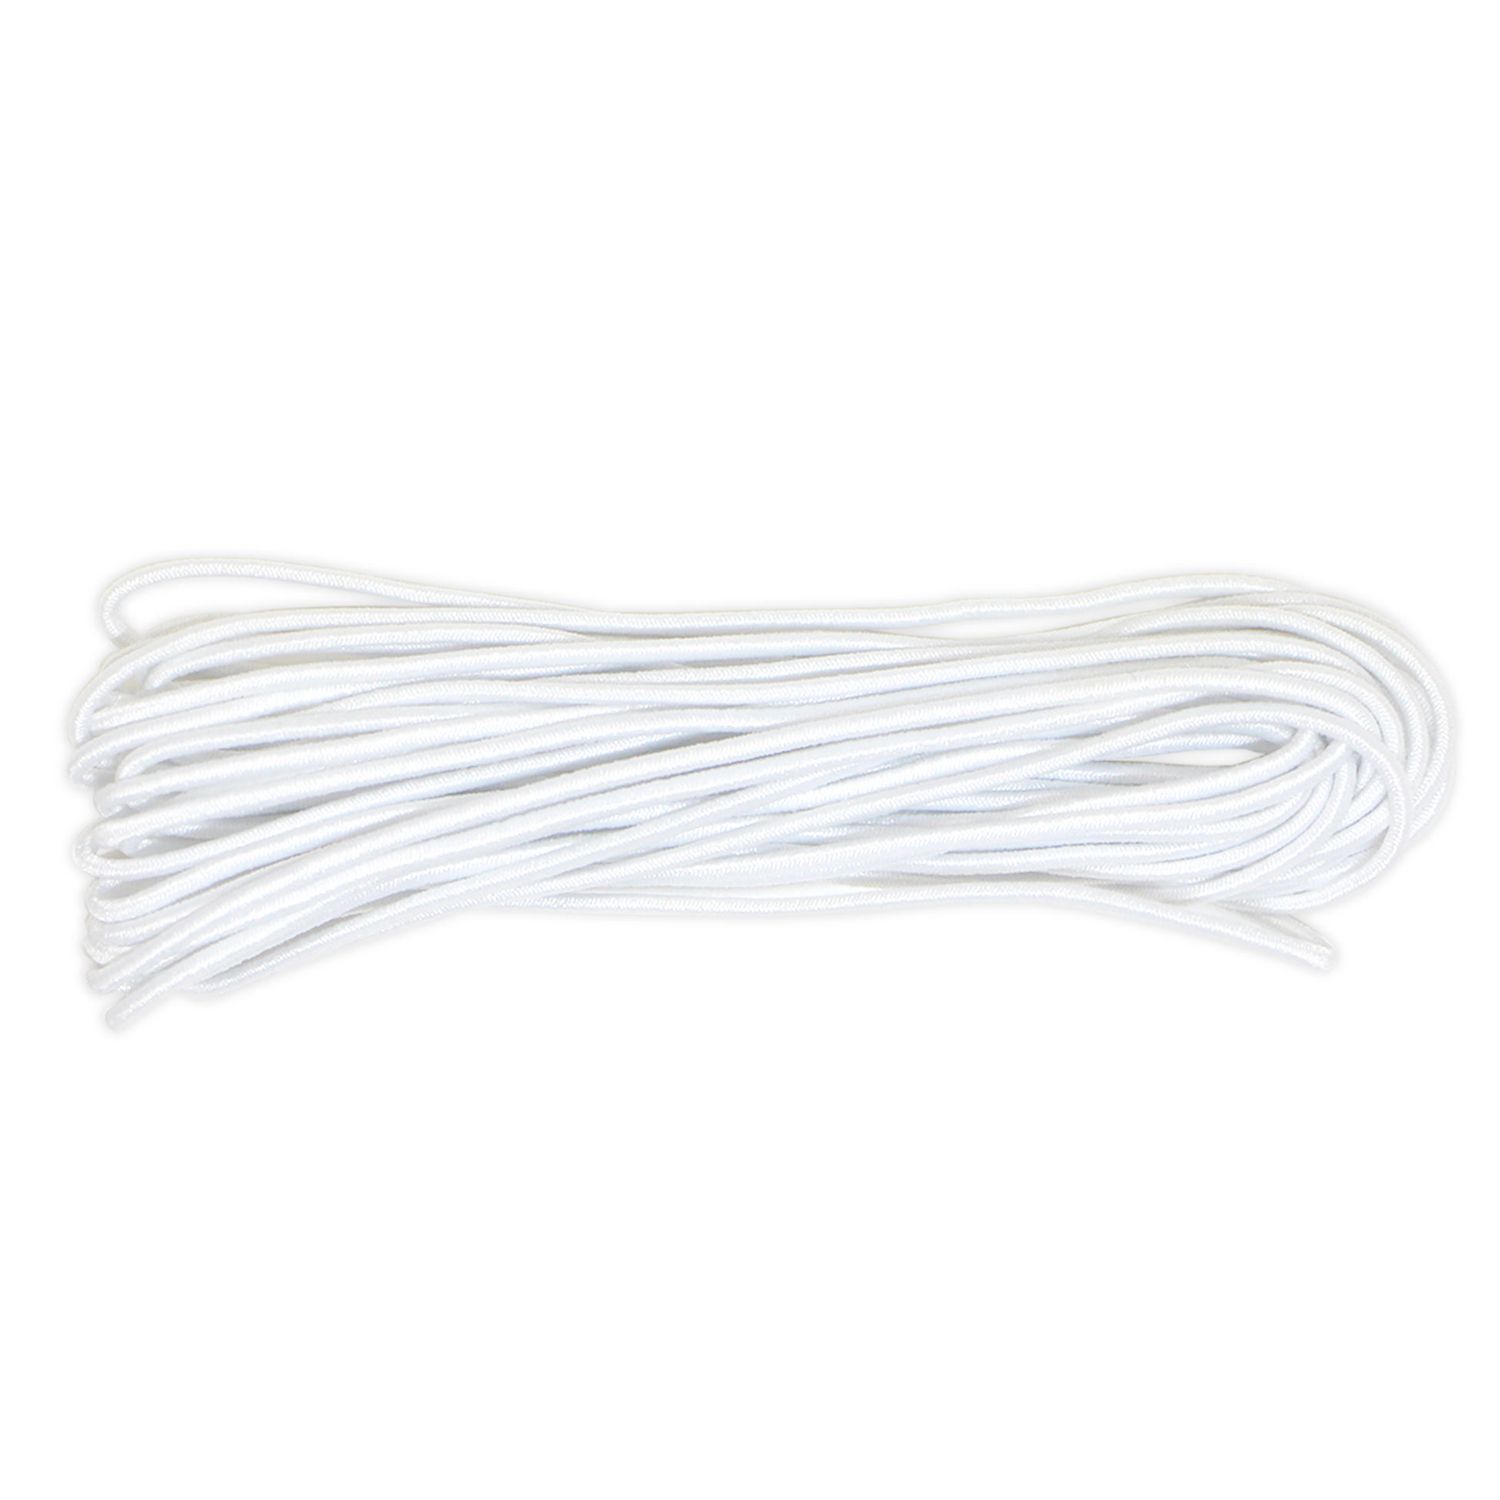 Corde en nylon élastique de corde délastique de corde élastique de 5M/10M noire/blanche attacher la courroie de remorque 5mm*10M-blanc 